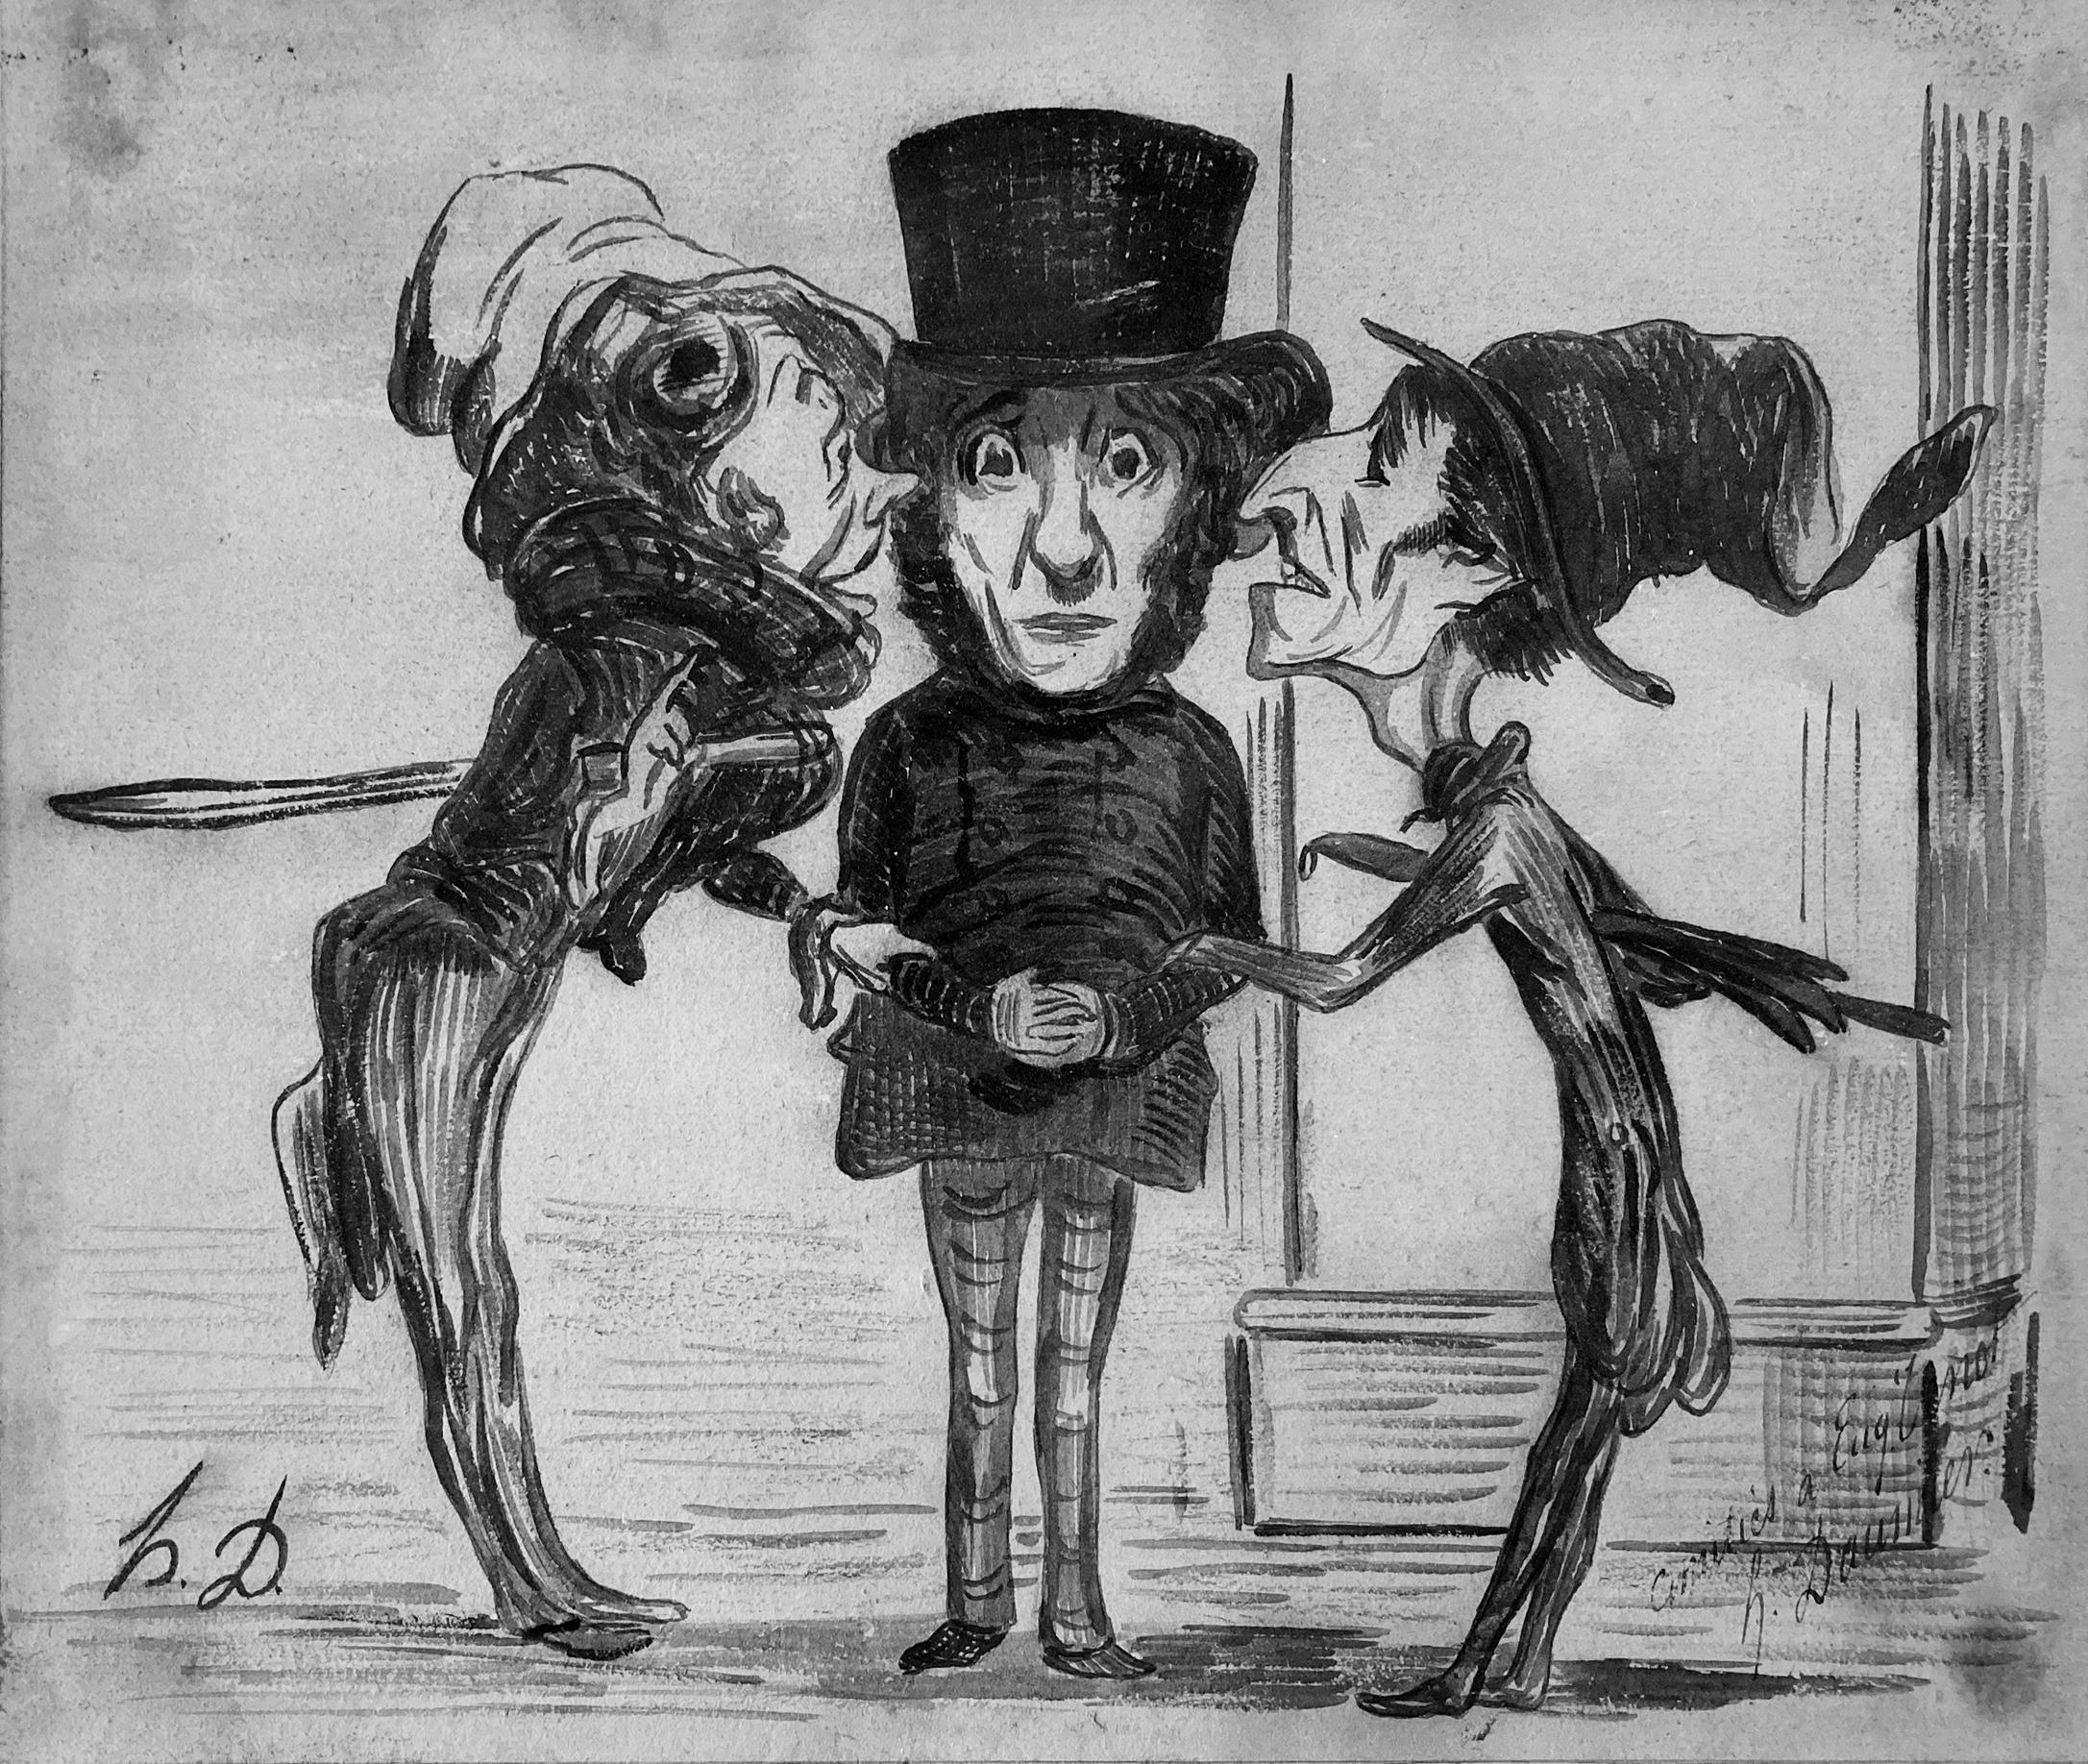 Honoré Daumier, Monsieur Gogo et les nouvellistes de la Bourse, 1838